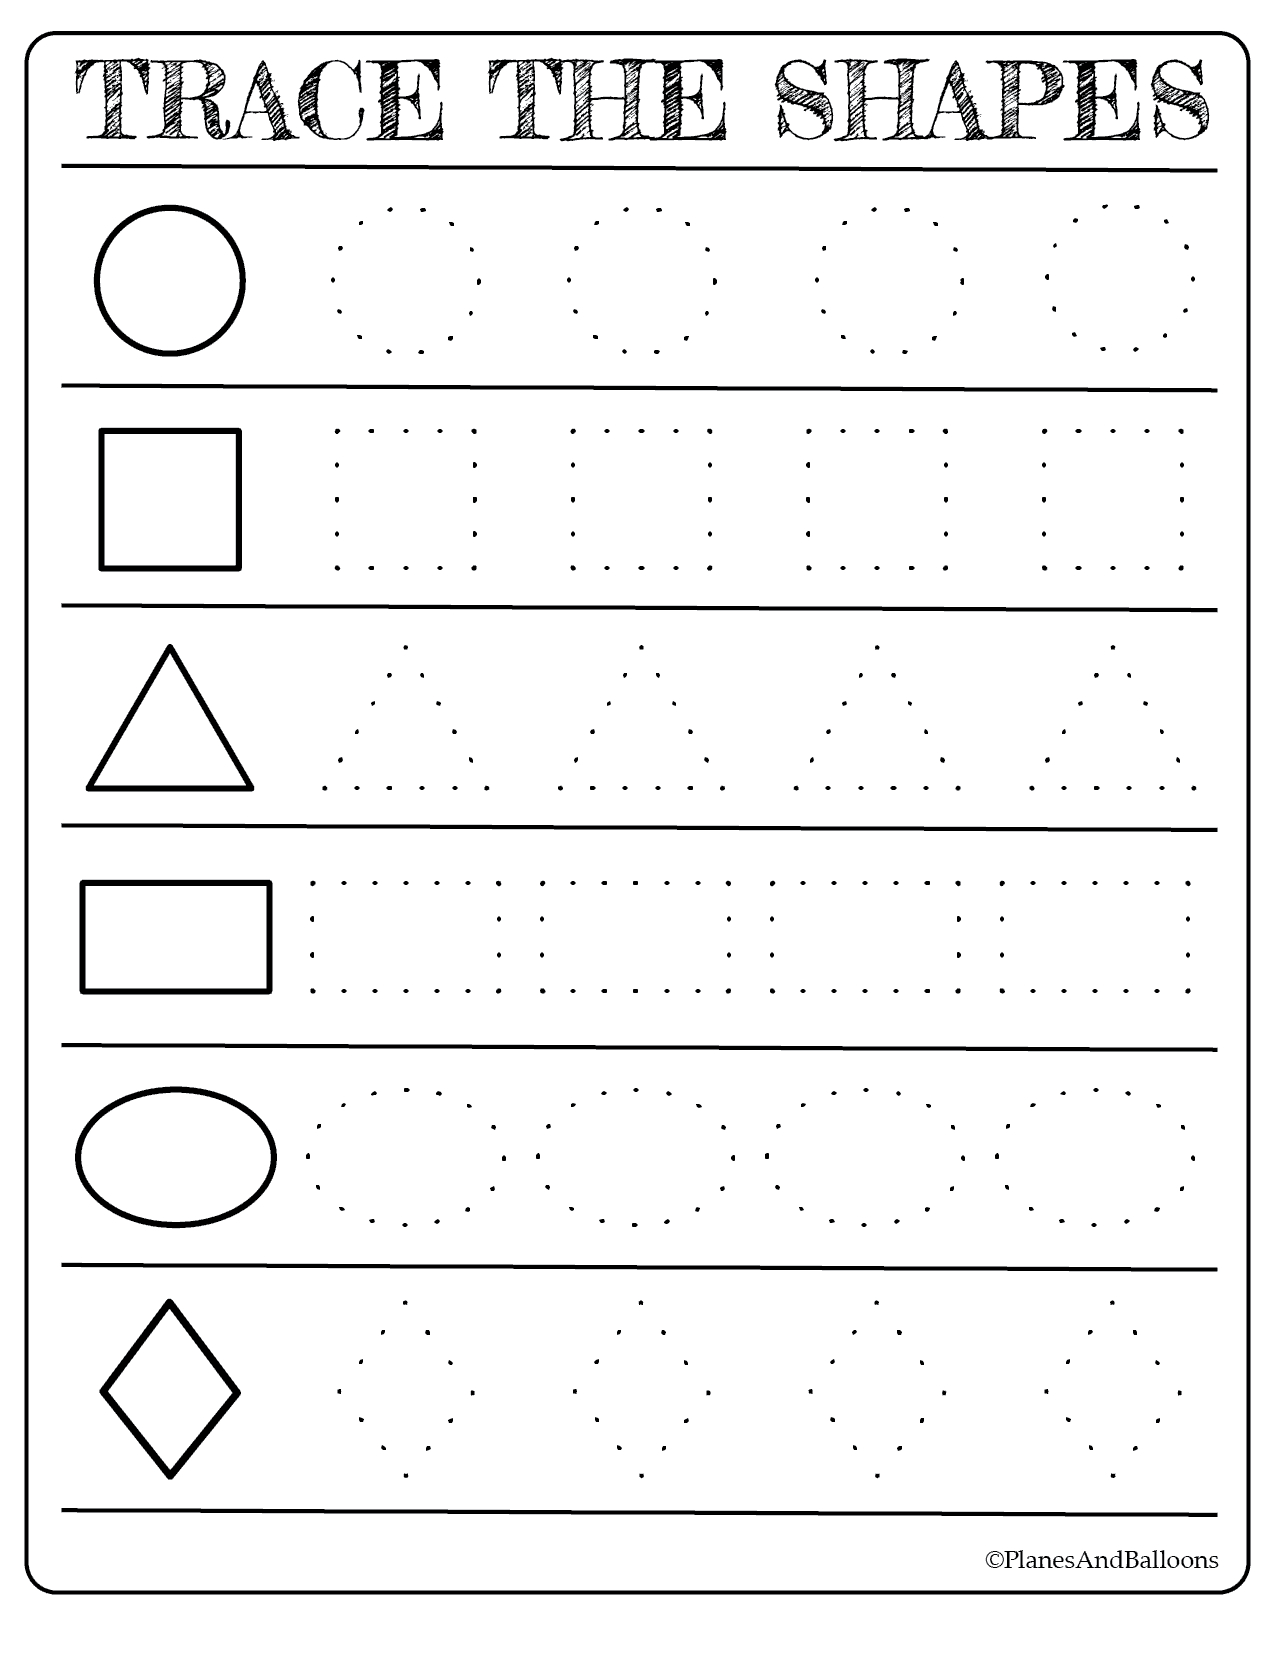 Free Printable Shapes Worksheets For Toddlers And Preschoolers - Free Printable Shapes Worksheets For Kindergarten